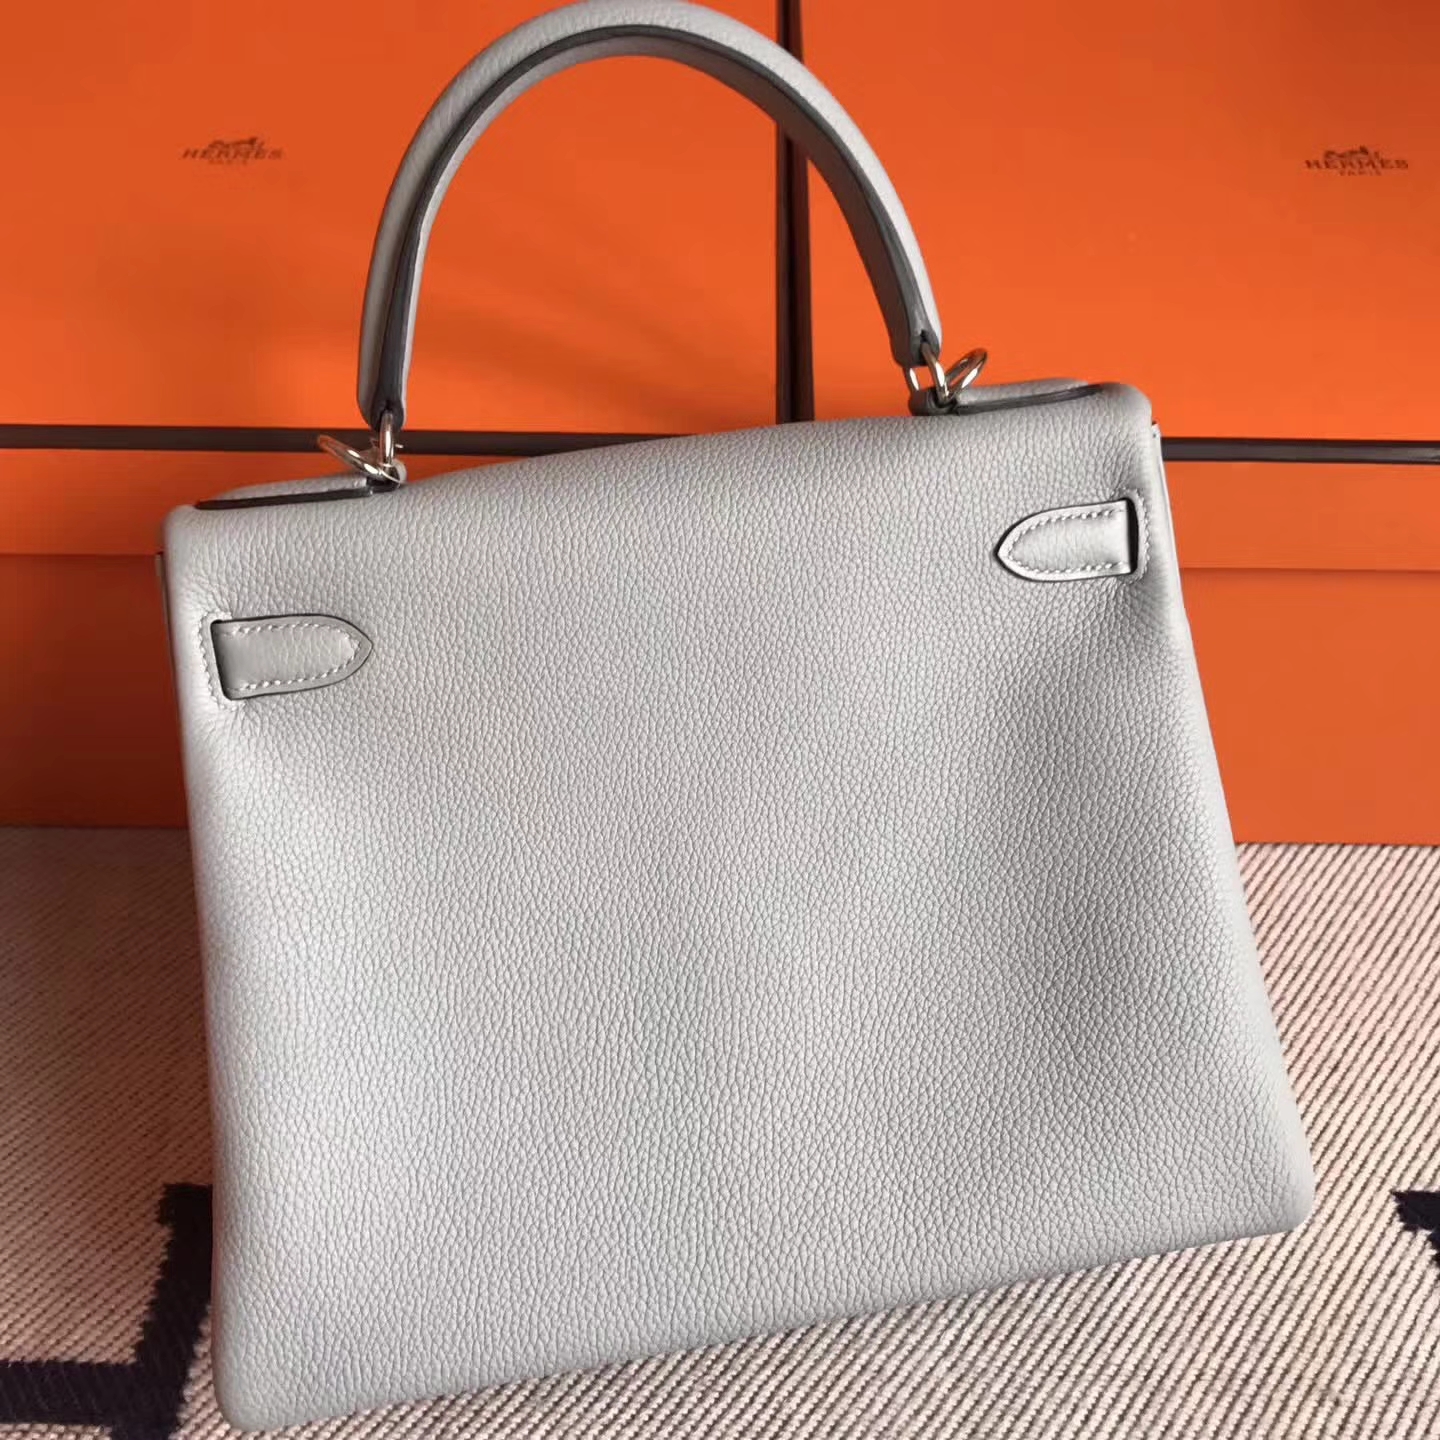 Sale Hermes Togo Leather Kelly Handbag in 8U Blue Glacier Silver Hardware